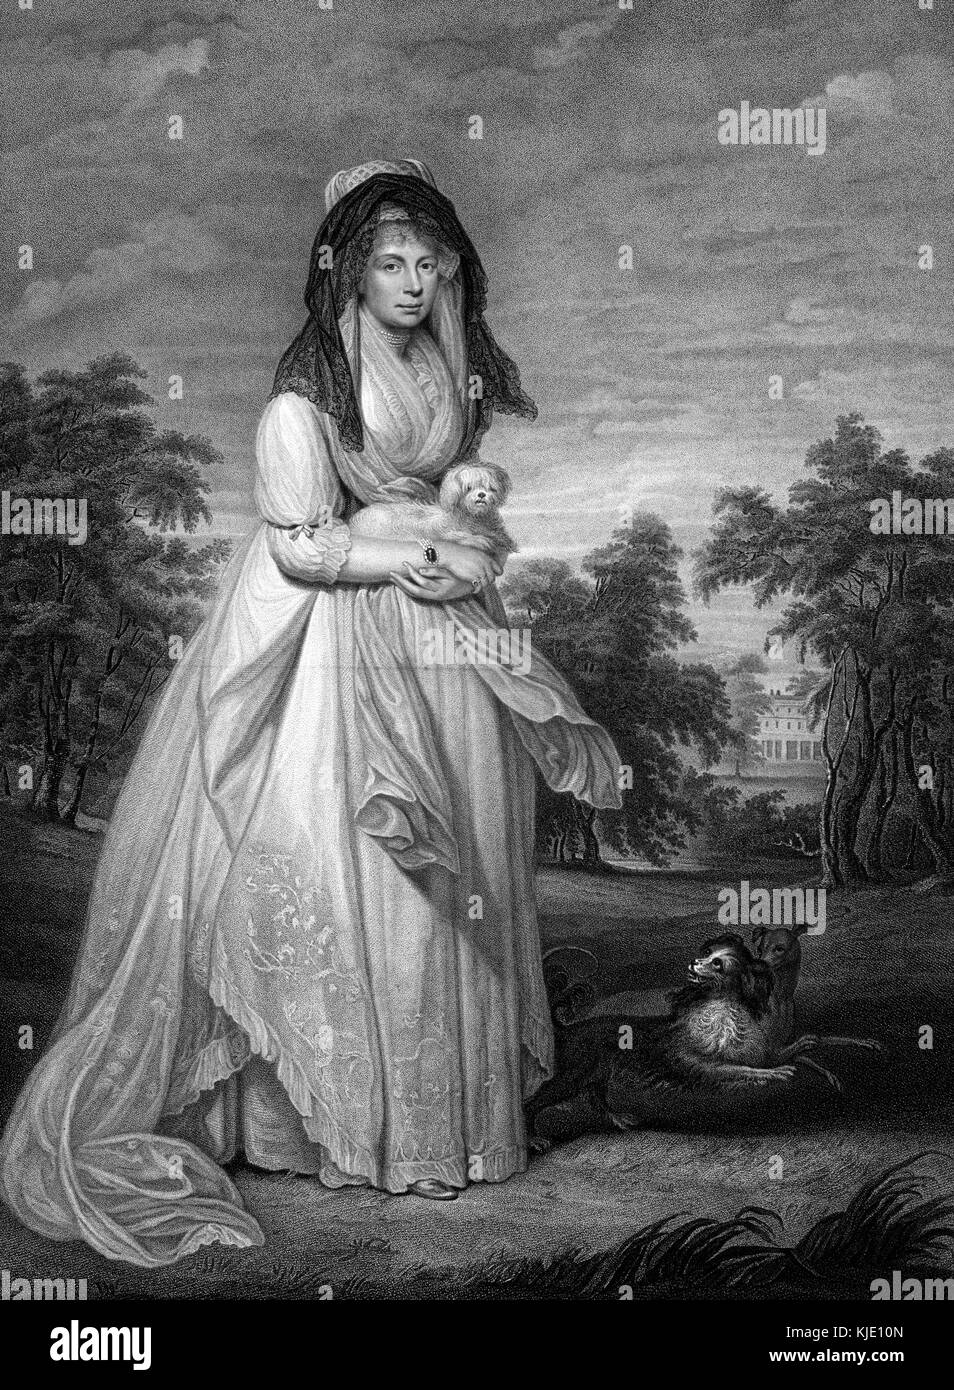 Gravure de crépi sur toute la longueur la reine Charlotte, épouse du roi George III, la reine de Grande-Bretagne et d'Irlande de son mariage en 1761 jusqu'à l'union des deux royaumes en 1801, après quoi elle a été reine du Royaume-Uni de Grande-Bretagne et d'Irlande jusqu'à sa mort en 1818, portant une longue robe noire, avec un voile noir, tenant un petit chien, de l'art par sir William Beechey, gravé par Thomas Ryder, 1809. à partir de la bibliothèque publique de new york. Banque D'Images